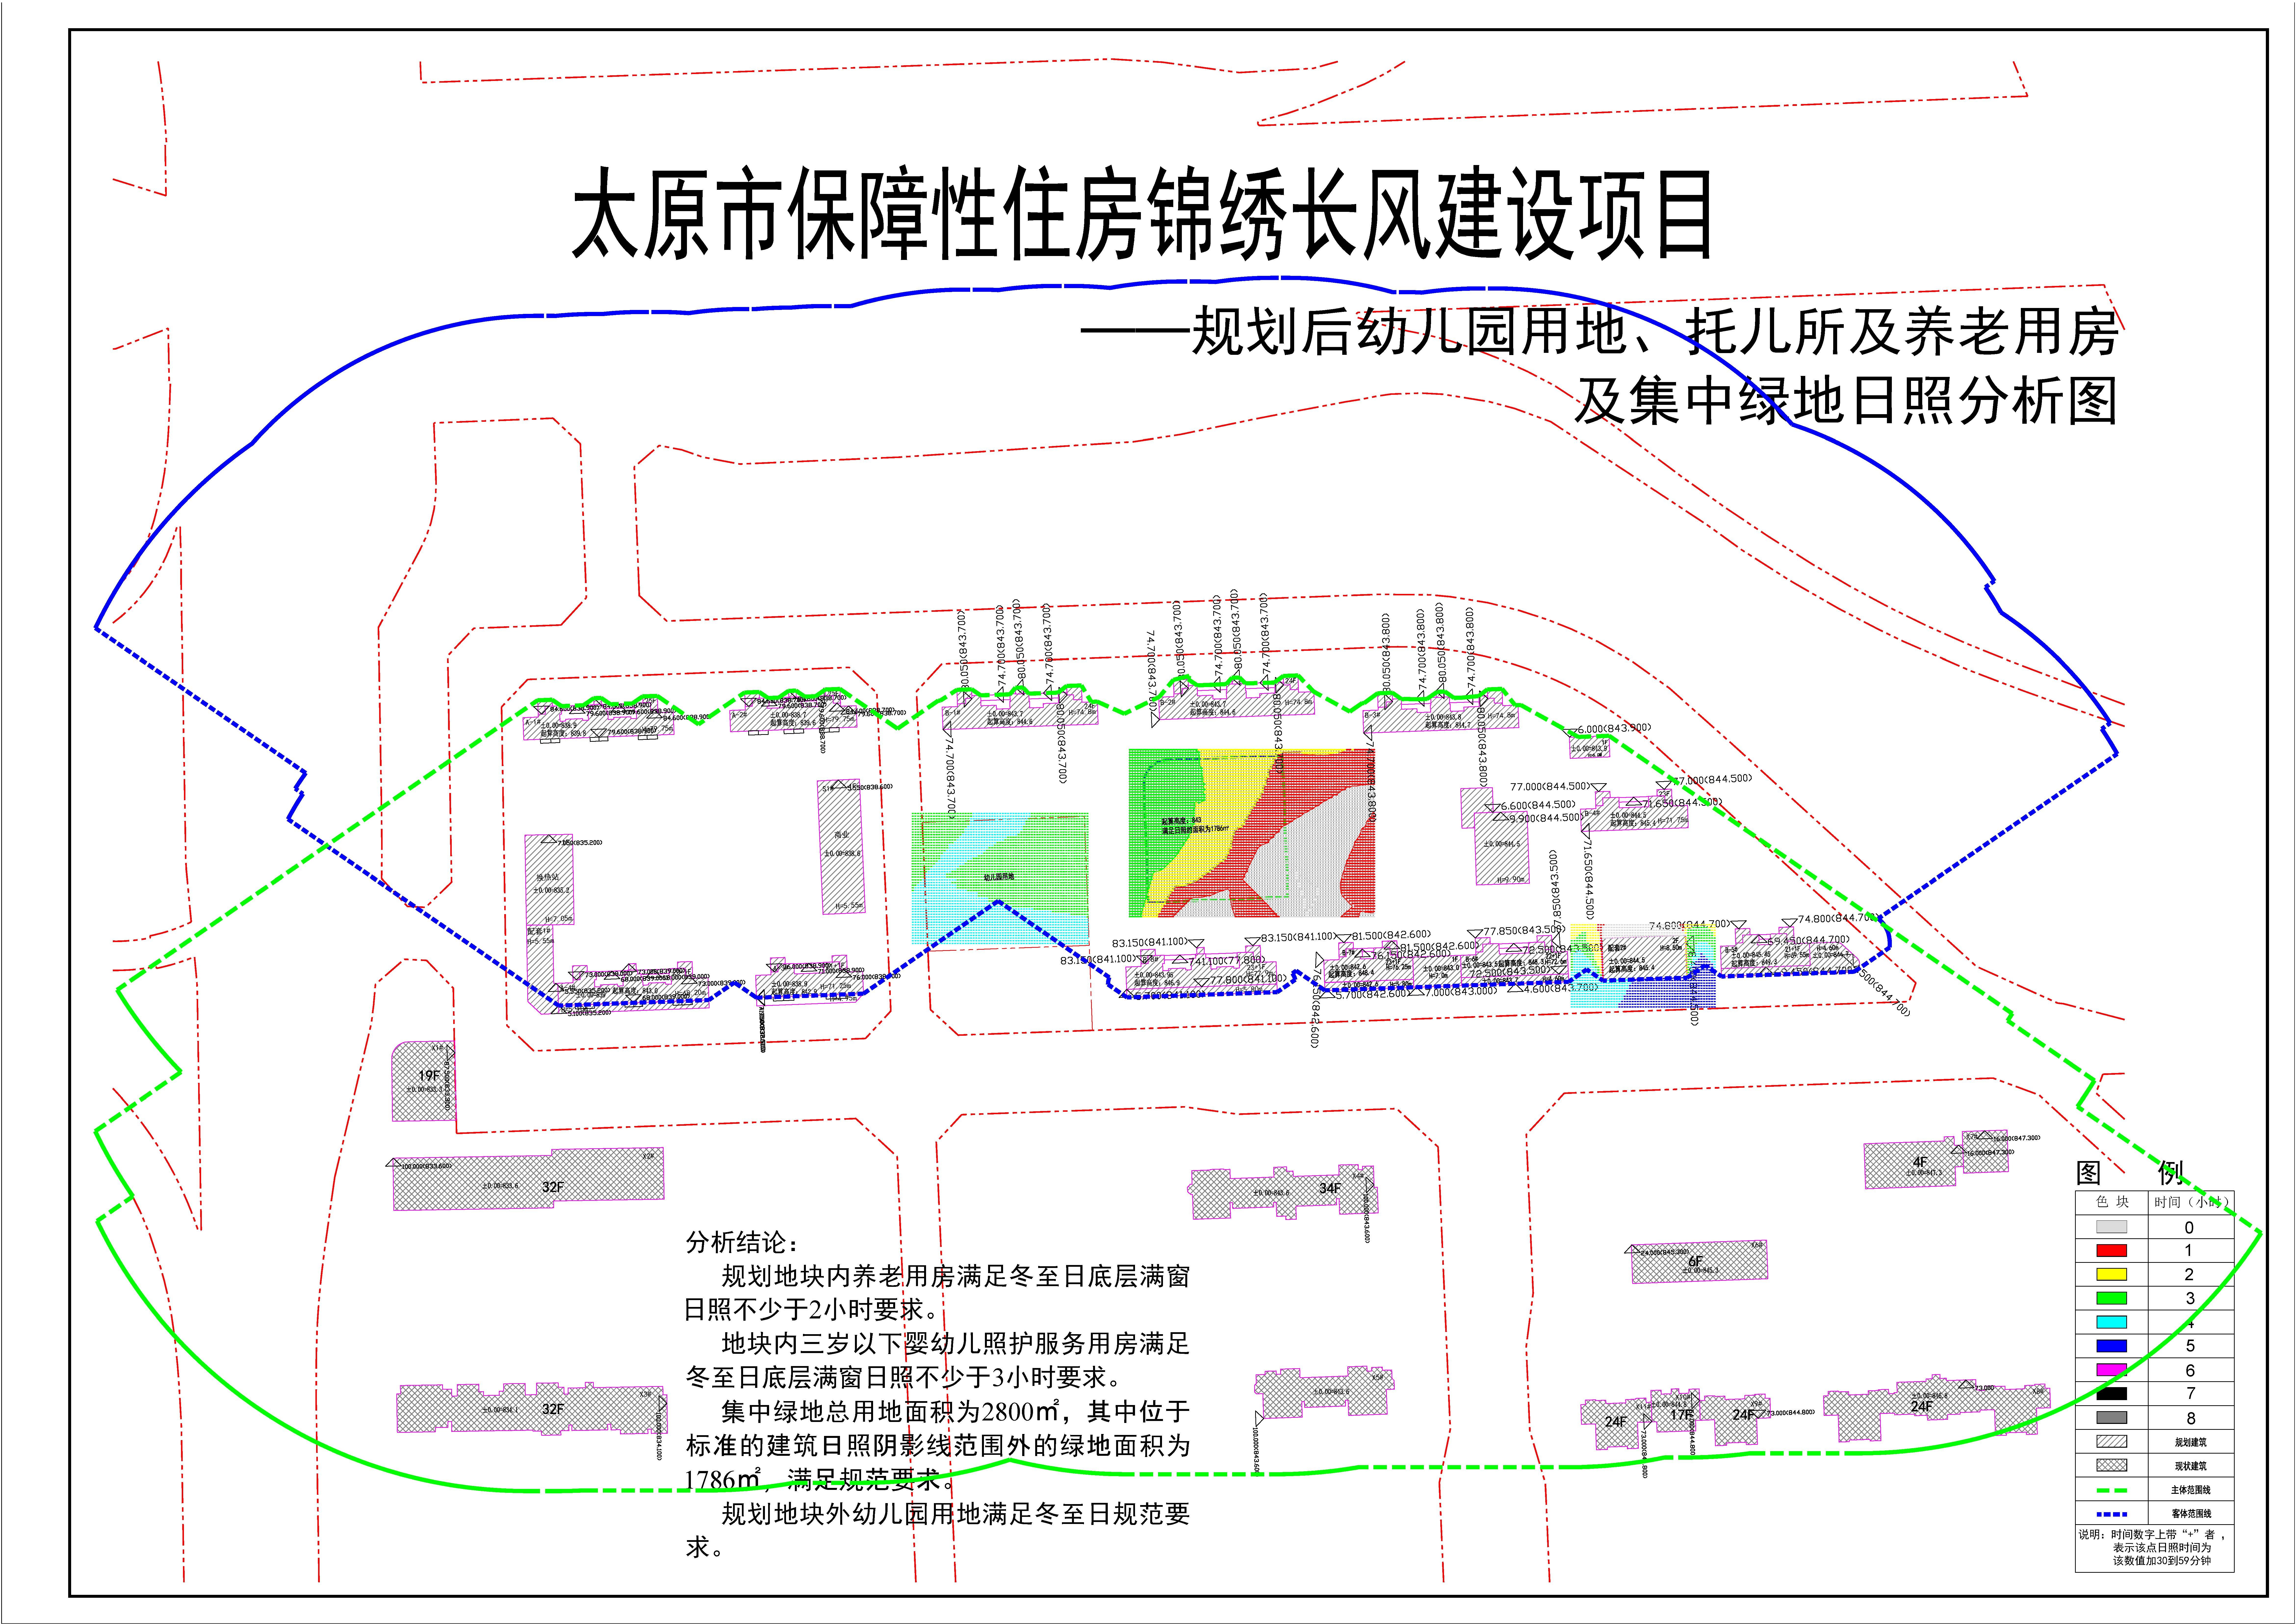 太原市配售型保障性住房项目建筑工程规划设计方案公示